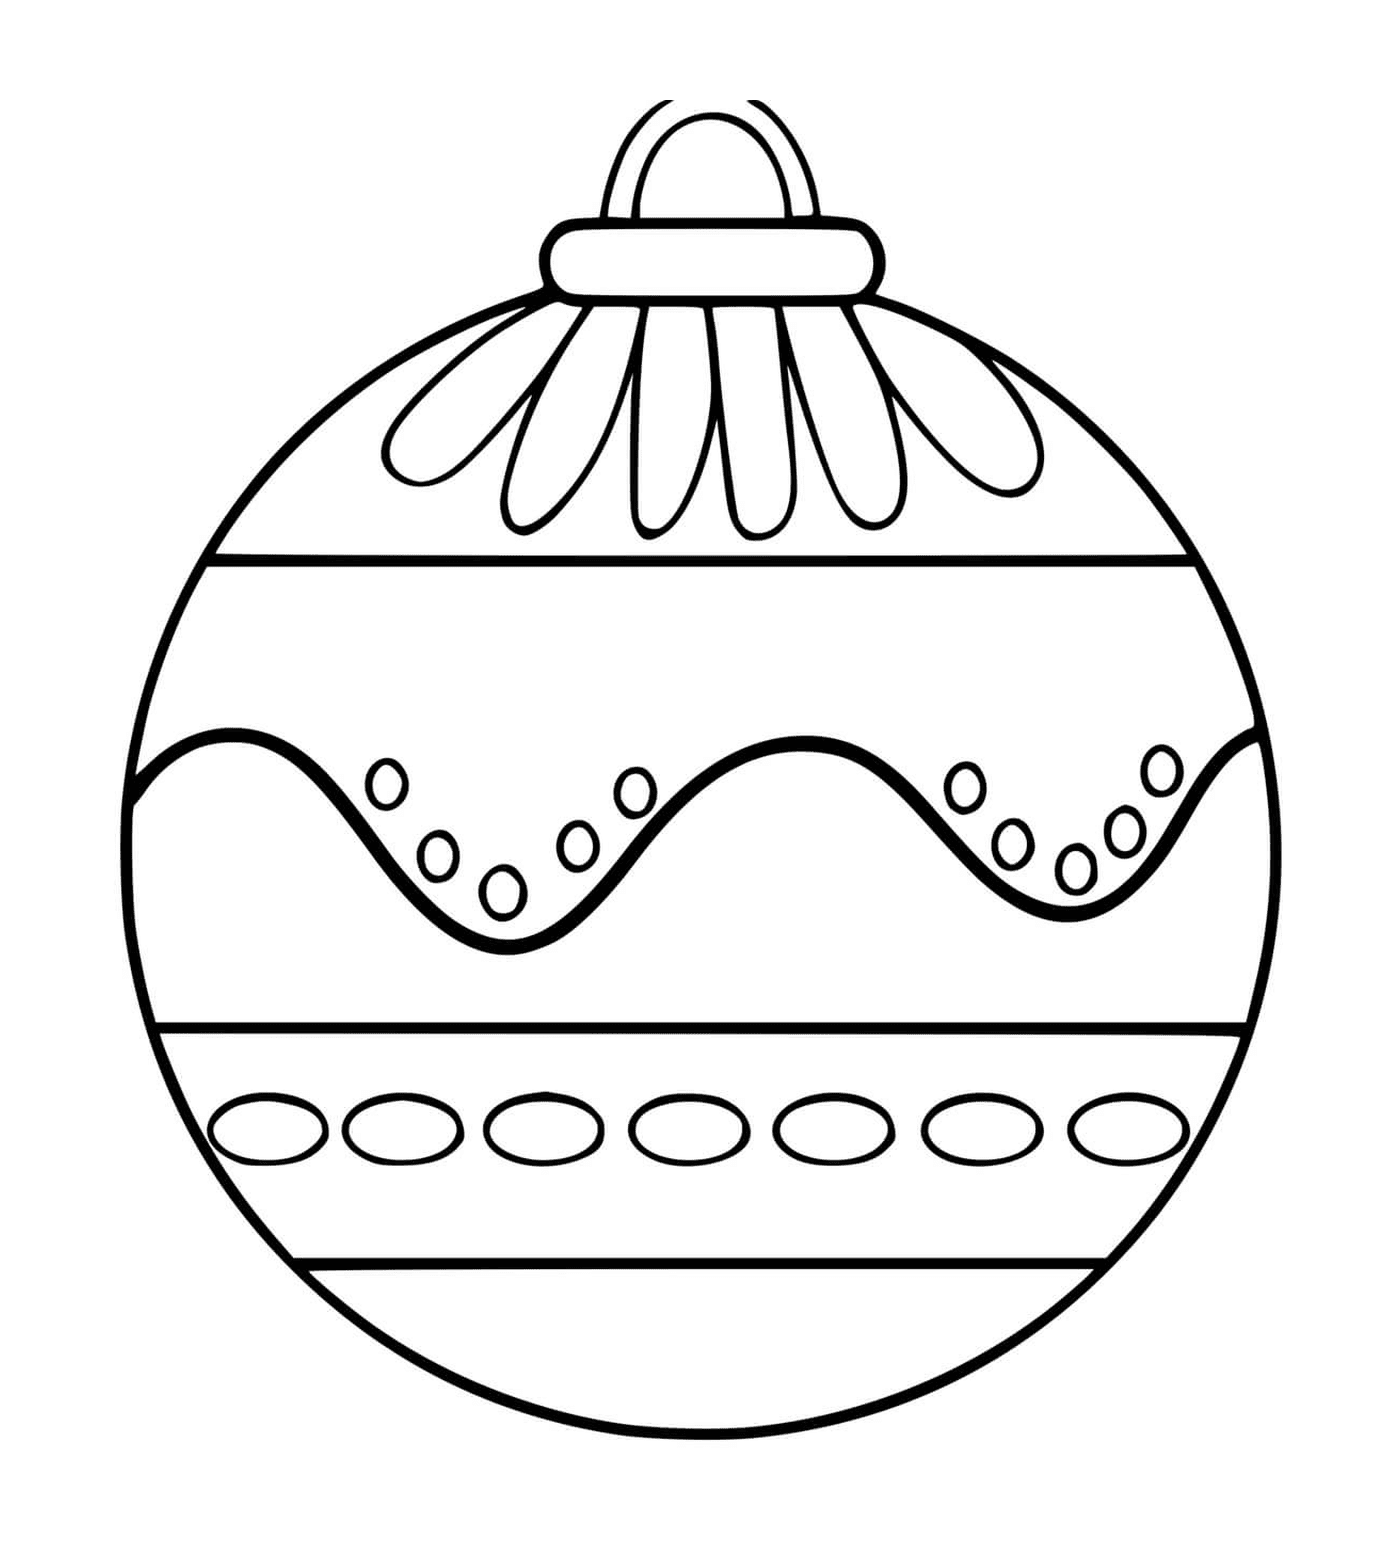  Ein Weihnachtsball mit verschiedenen Mustern 